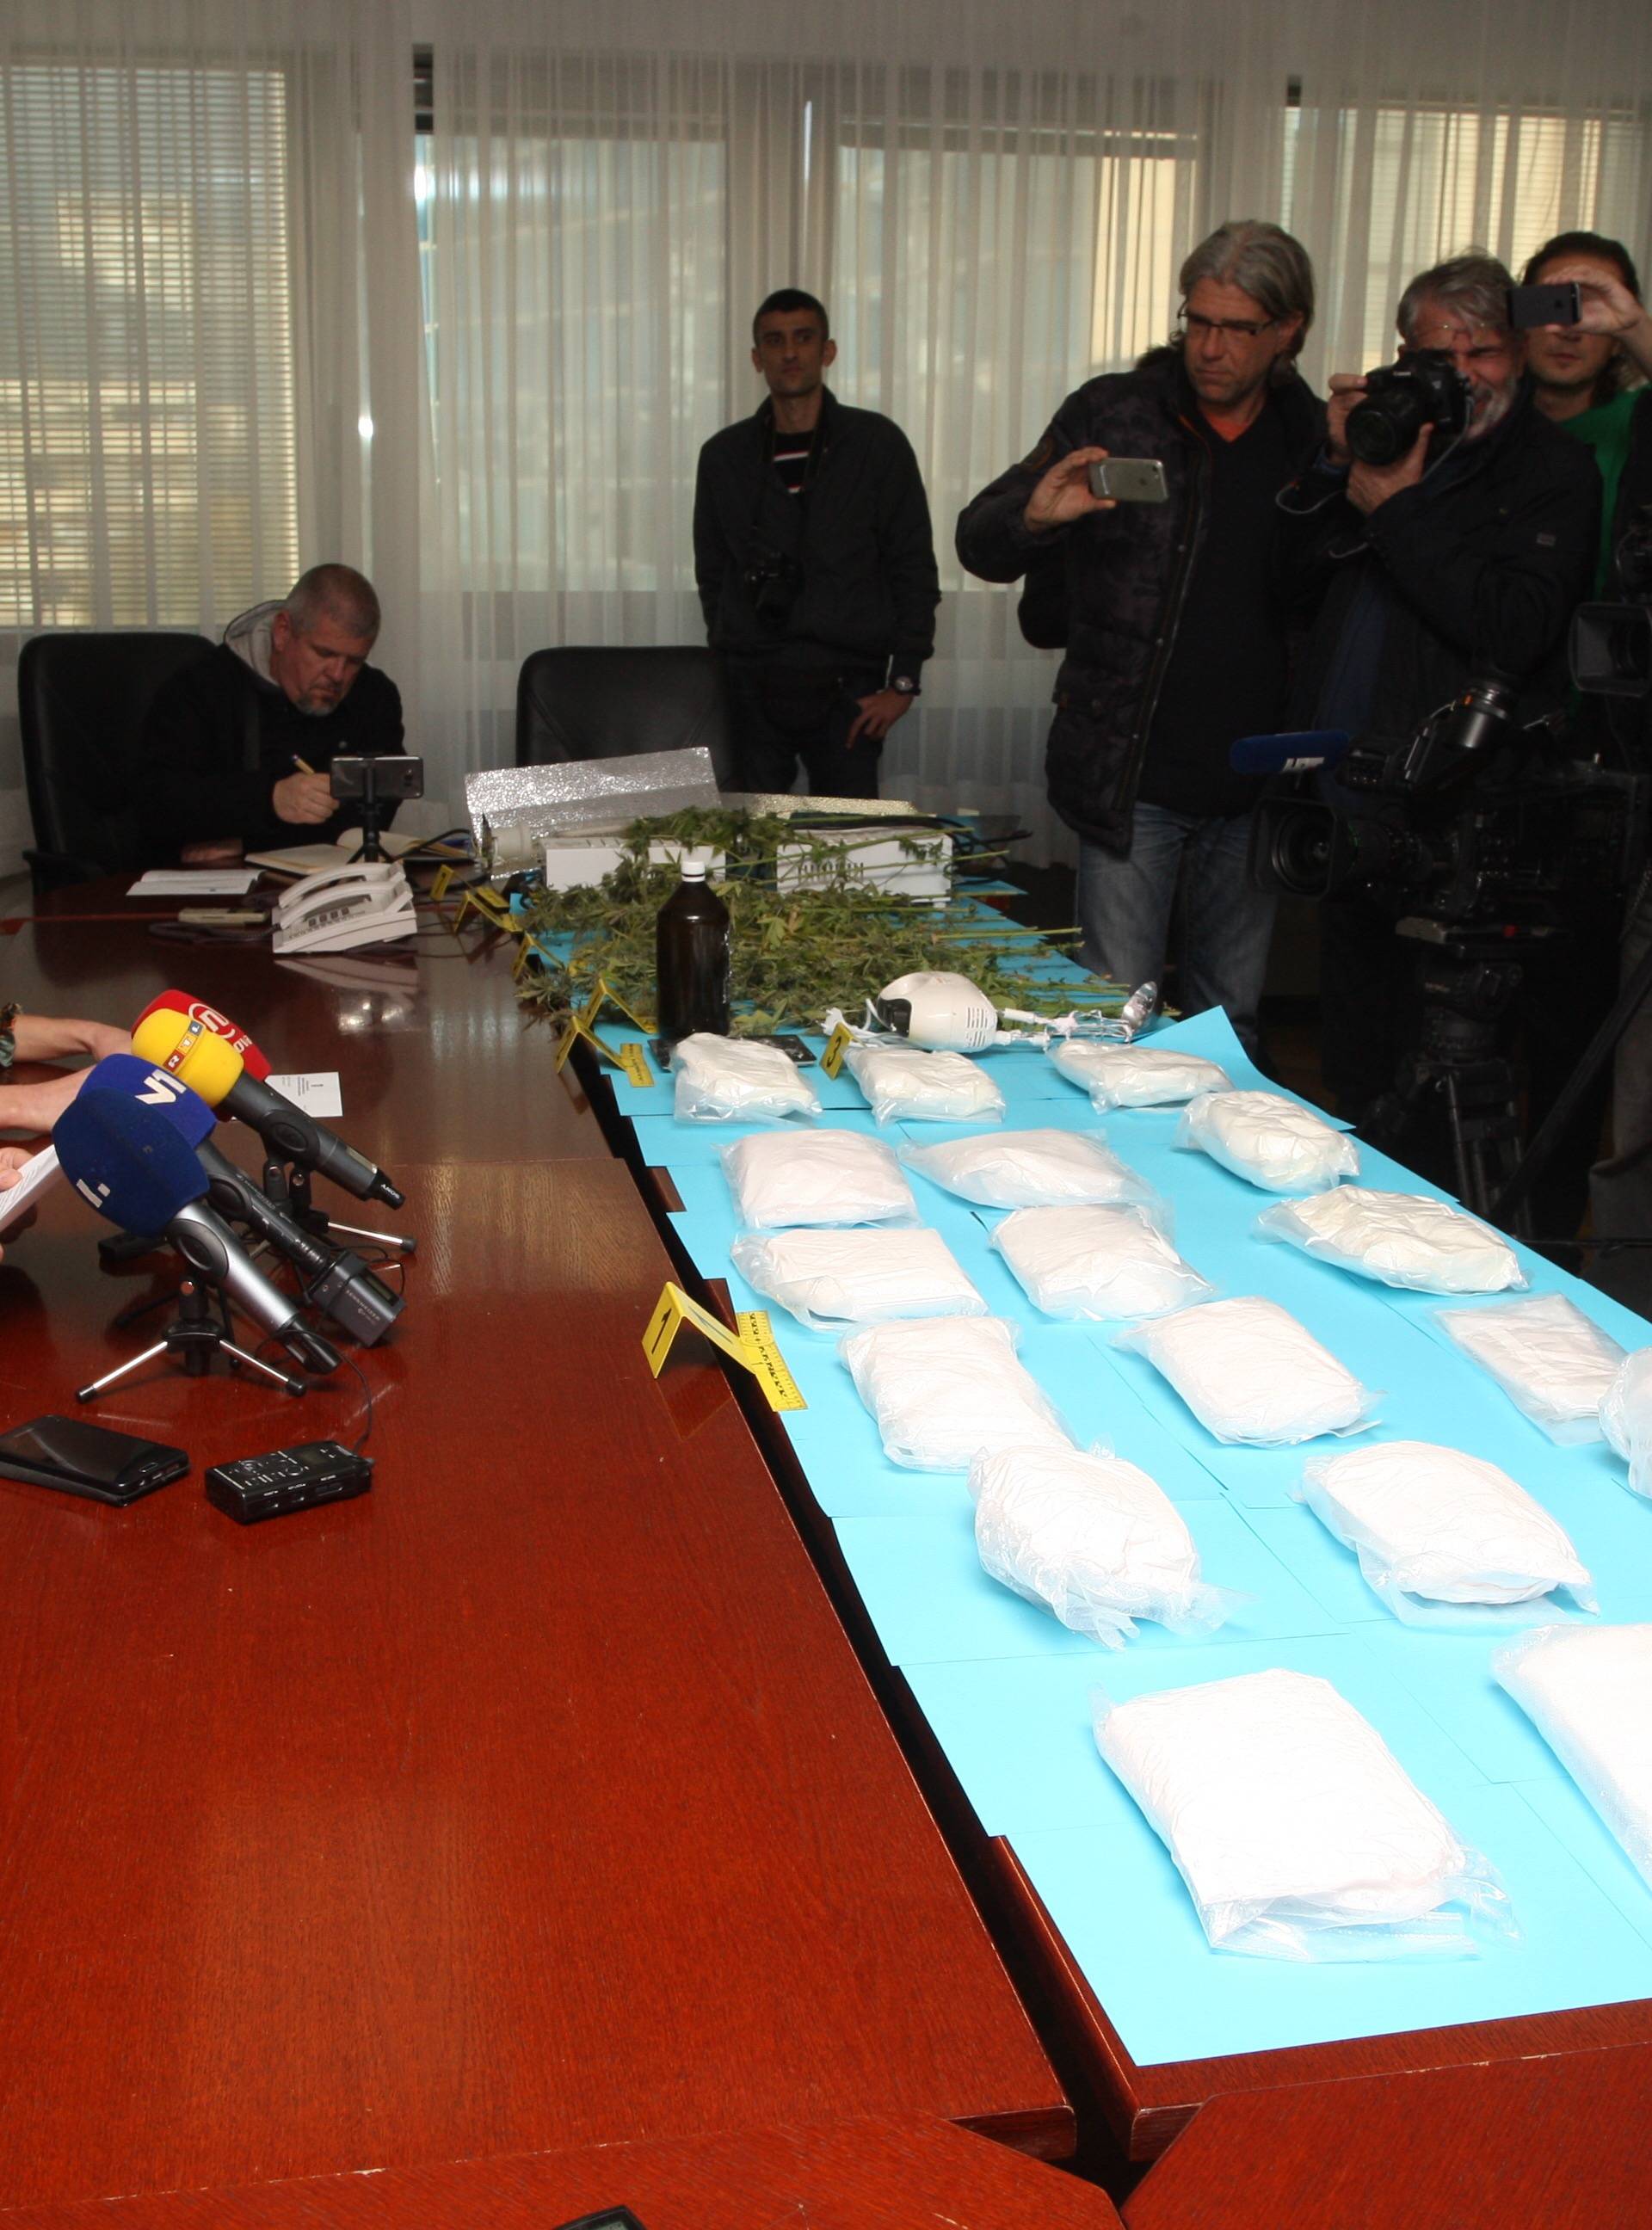 Rekordna zapljena amfetamina u Splitu: Pronašli su čak 18 kg